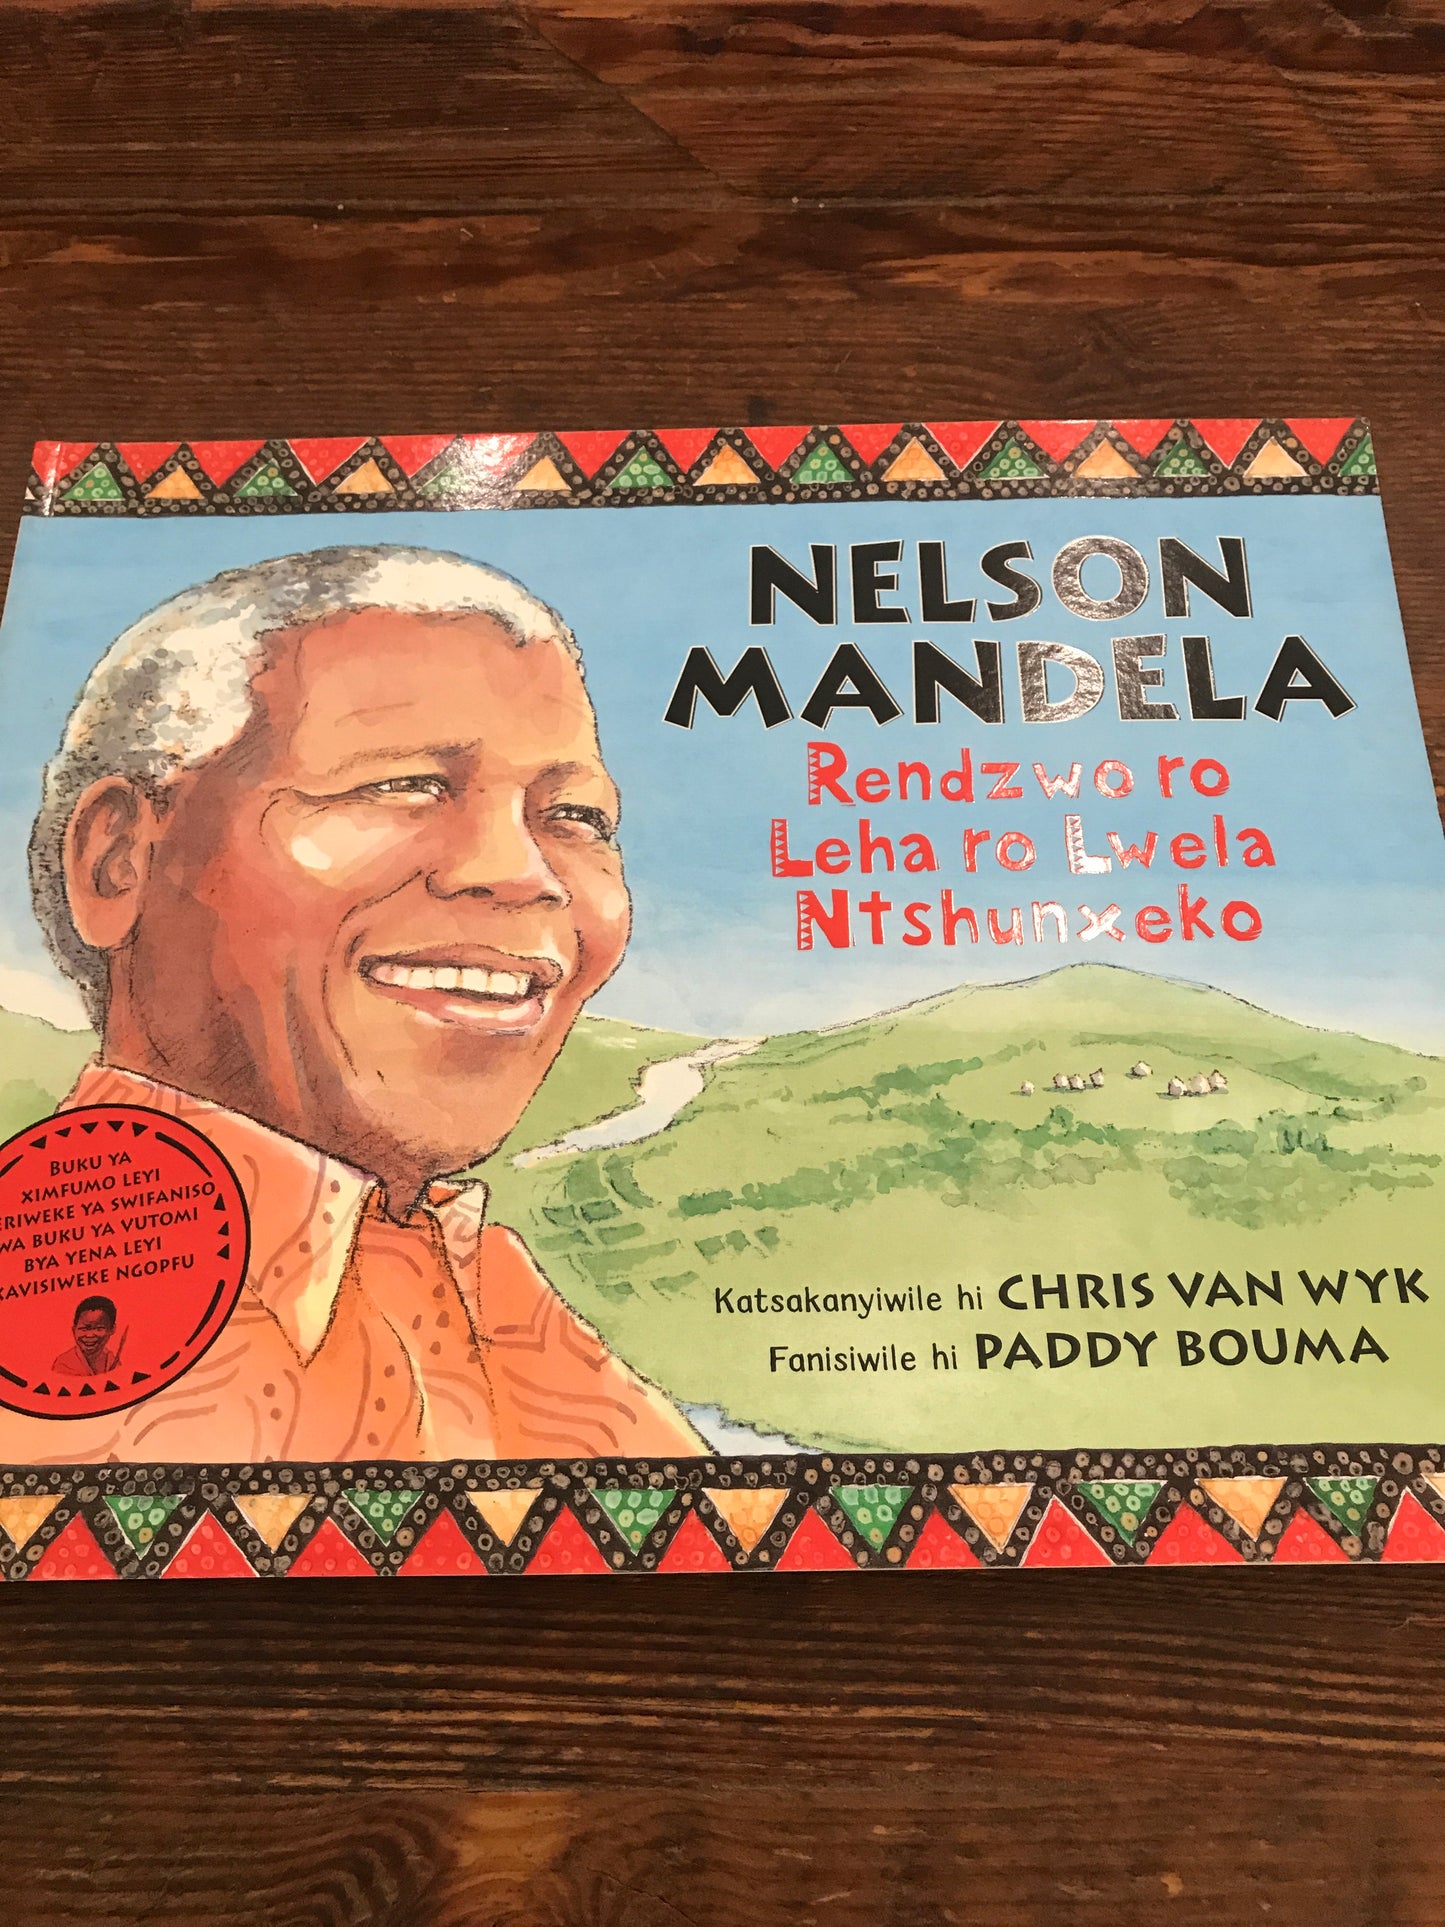 Nelson Mandela: Rendzwo ro leha ro lwela ntshunxeko (xiTsonga)